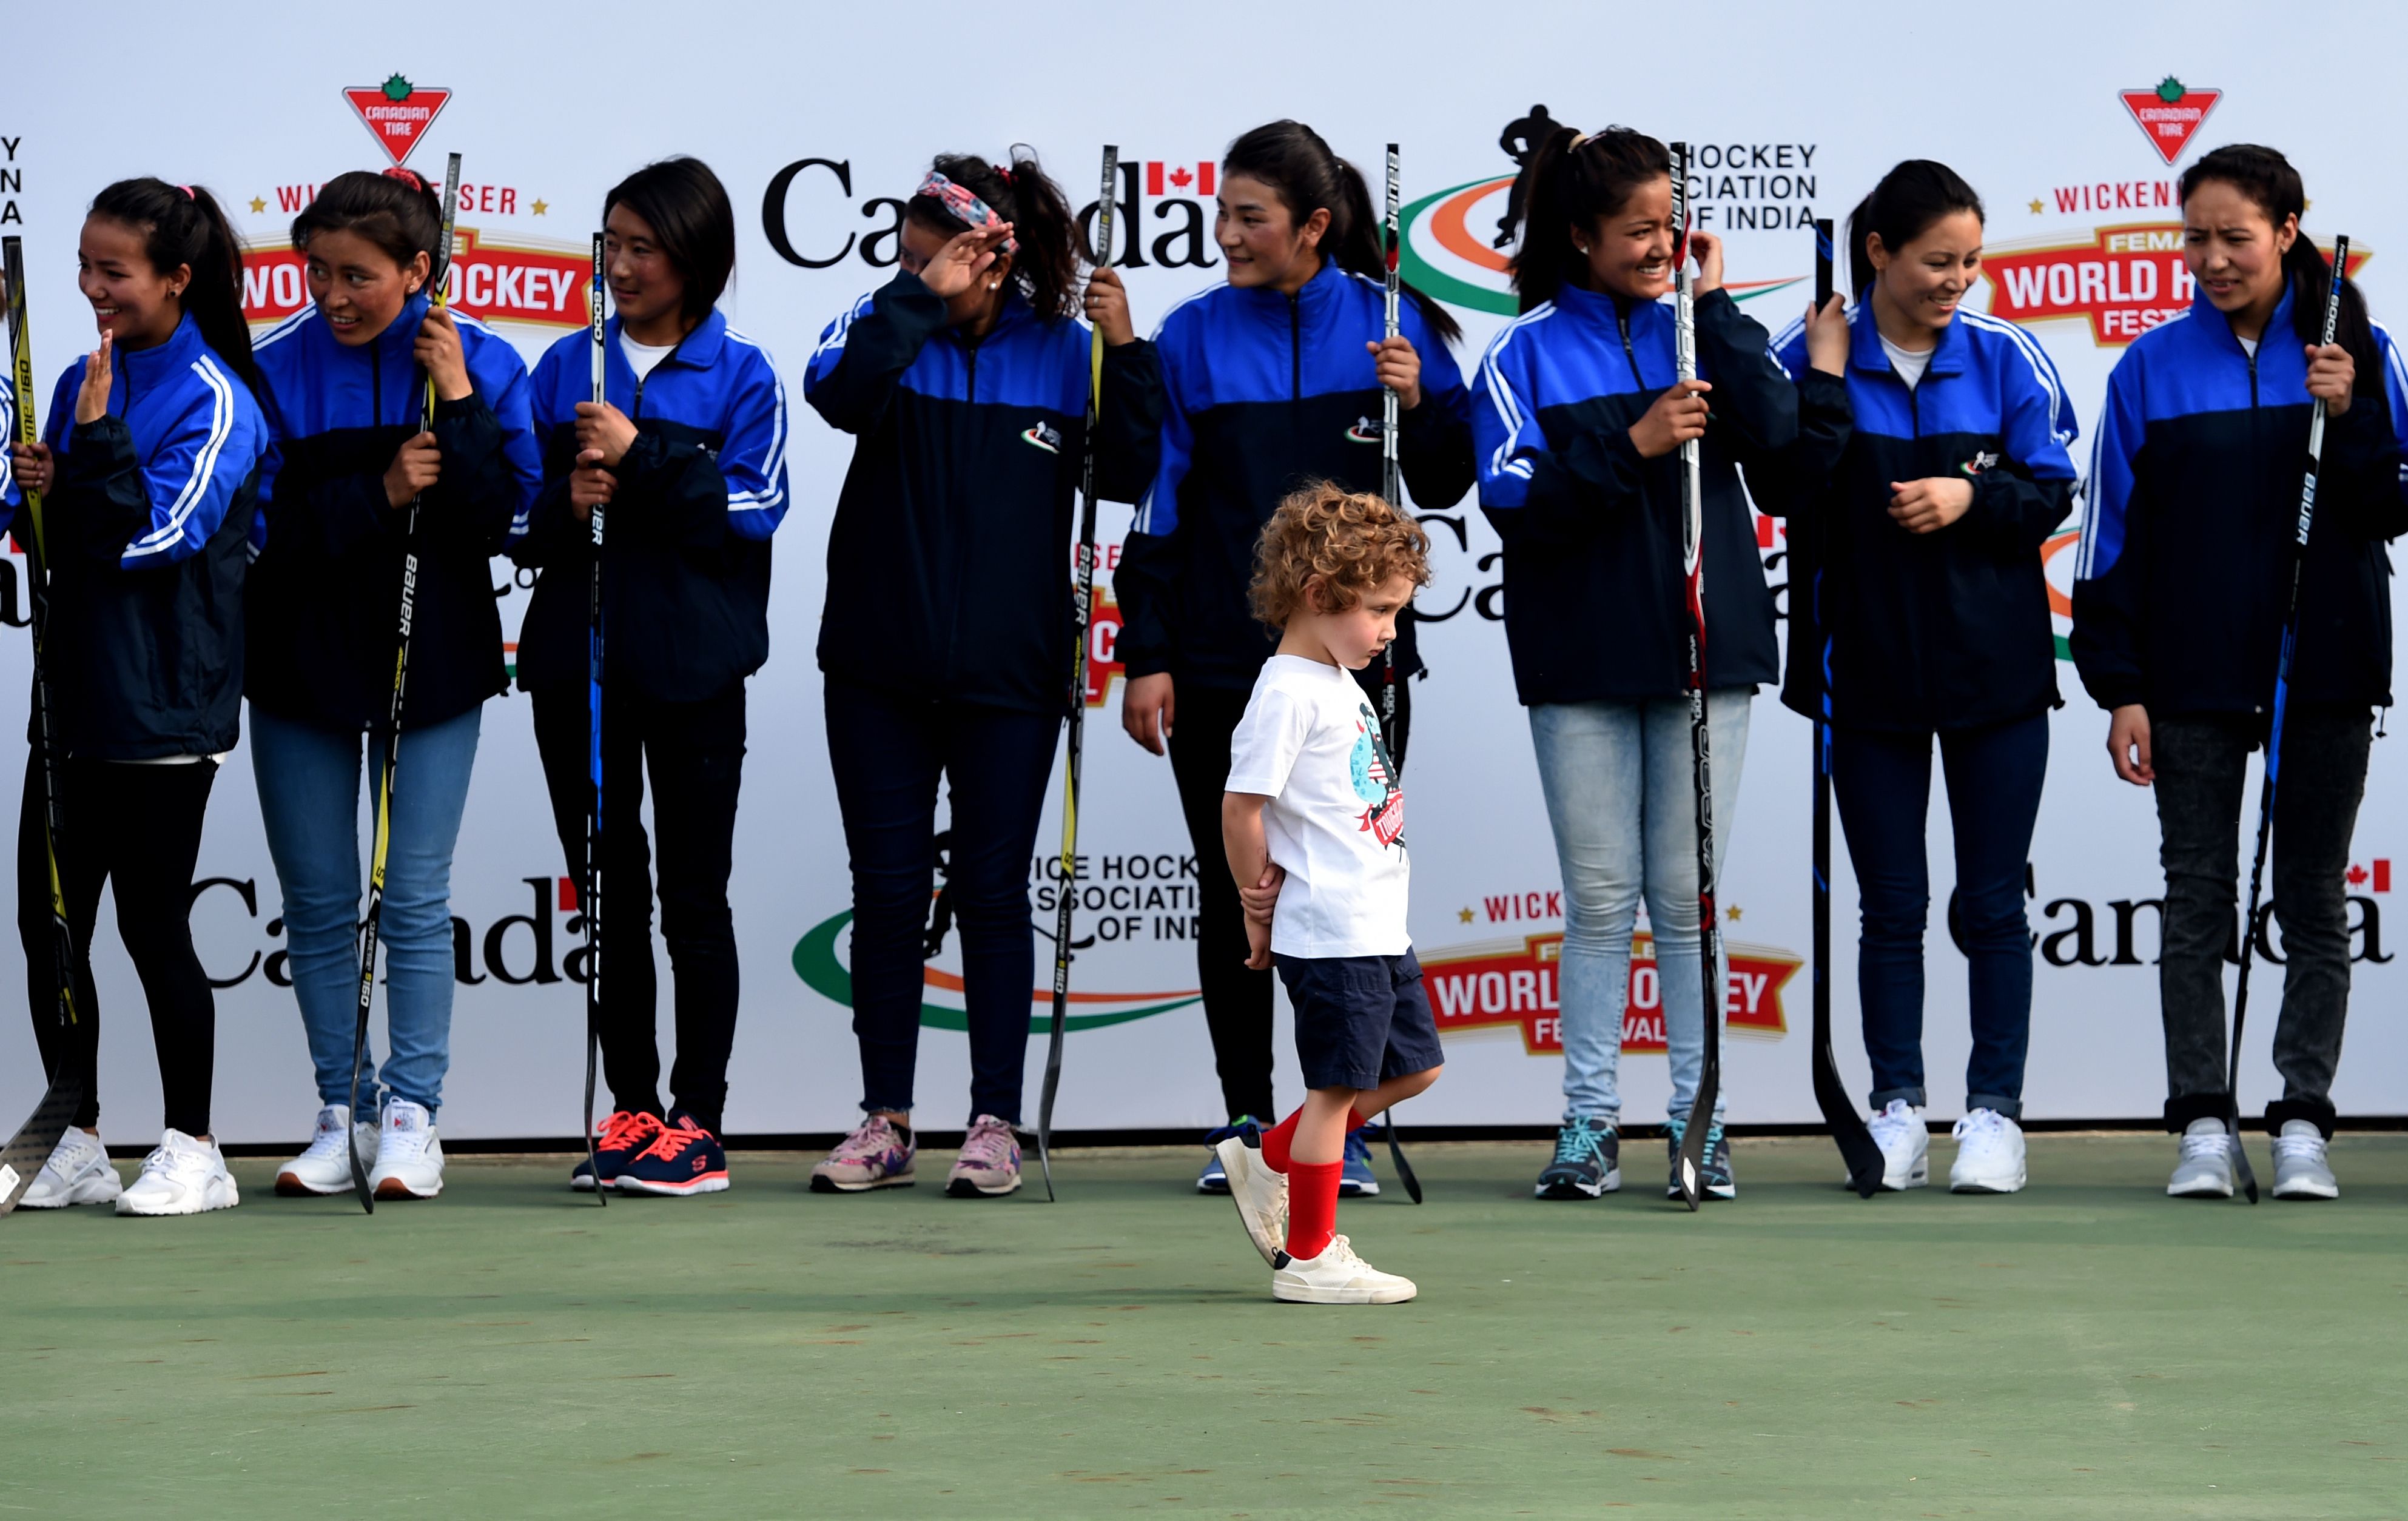 الابن الأصغر لرئيس وزراء كندا أمام لاعبات الهوكى بالهند